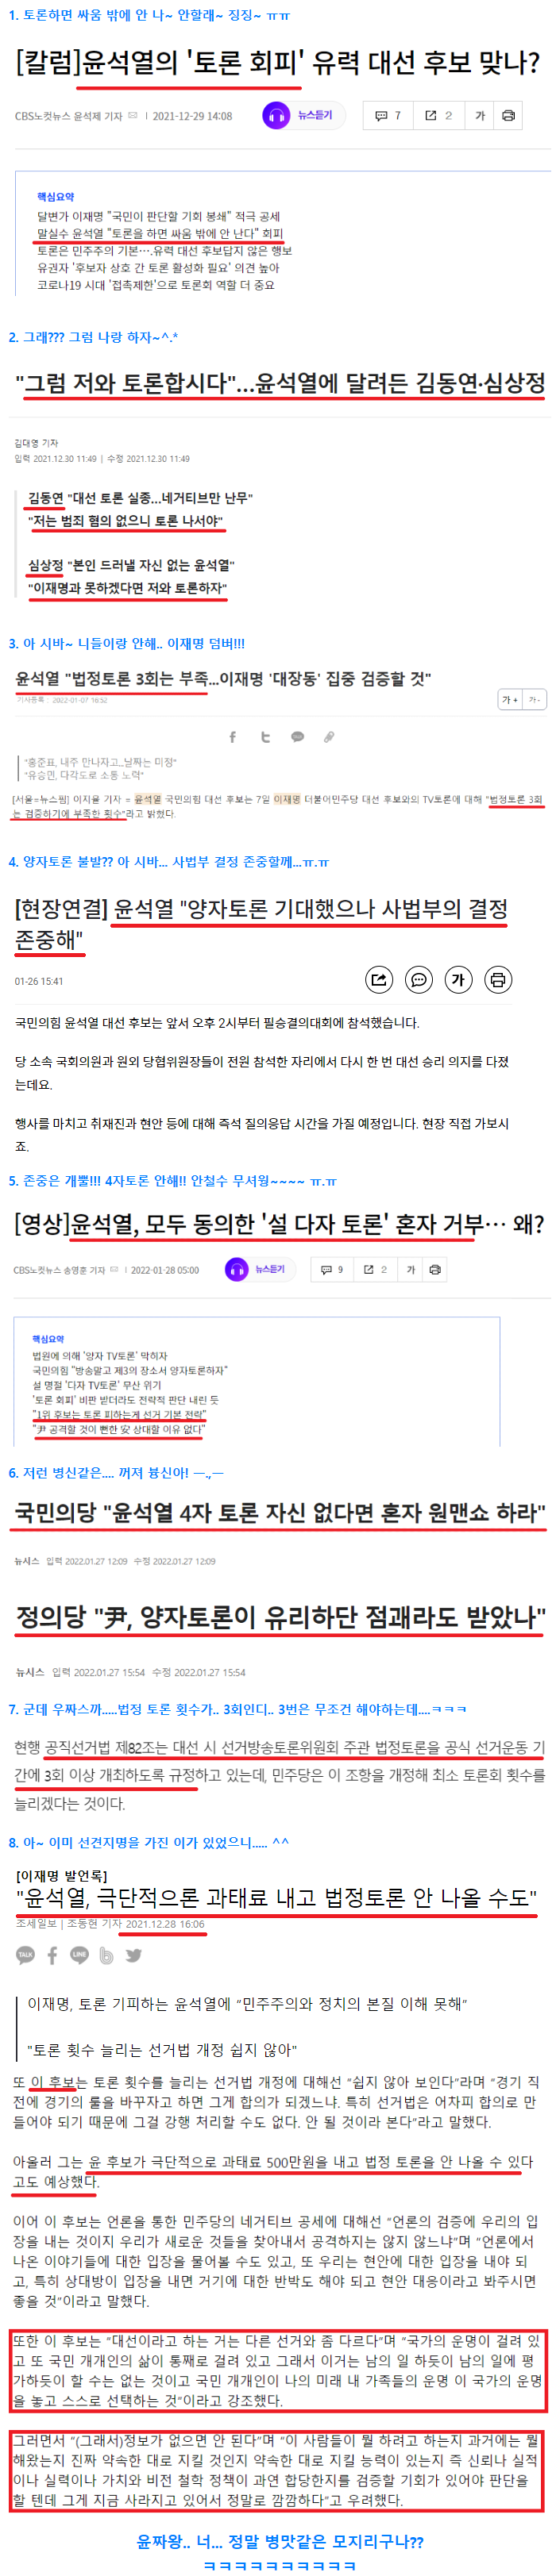 윤석열 토론 변천사.png